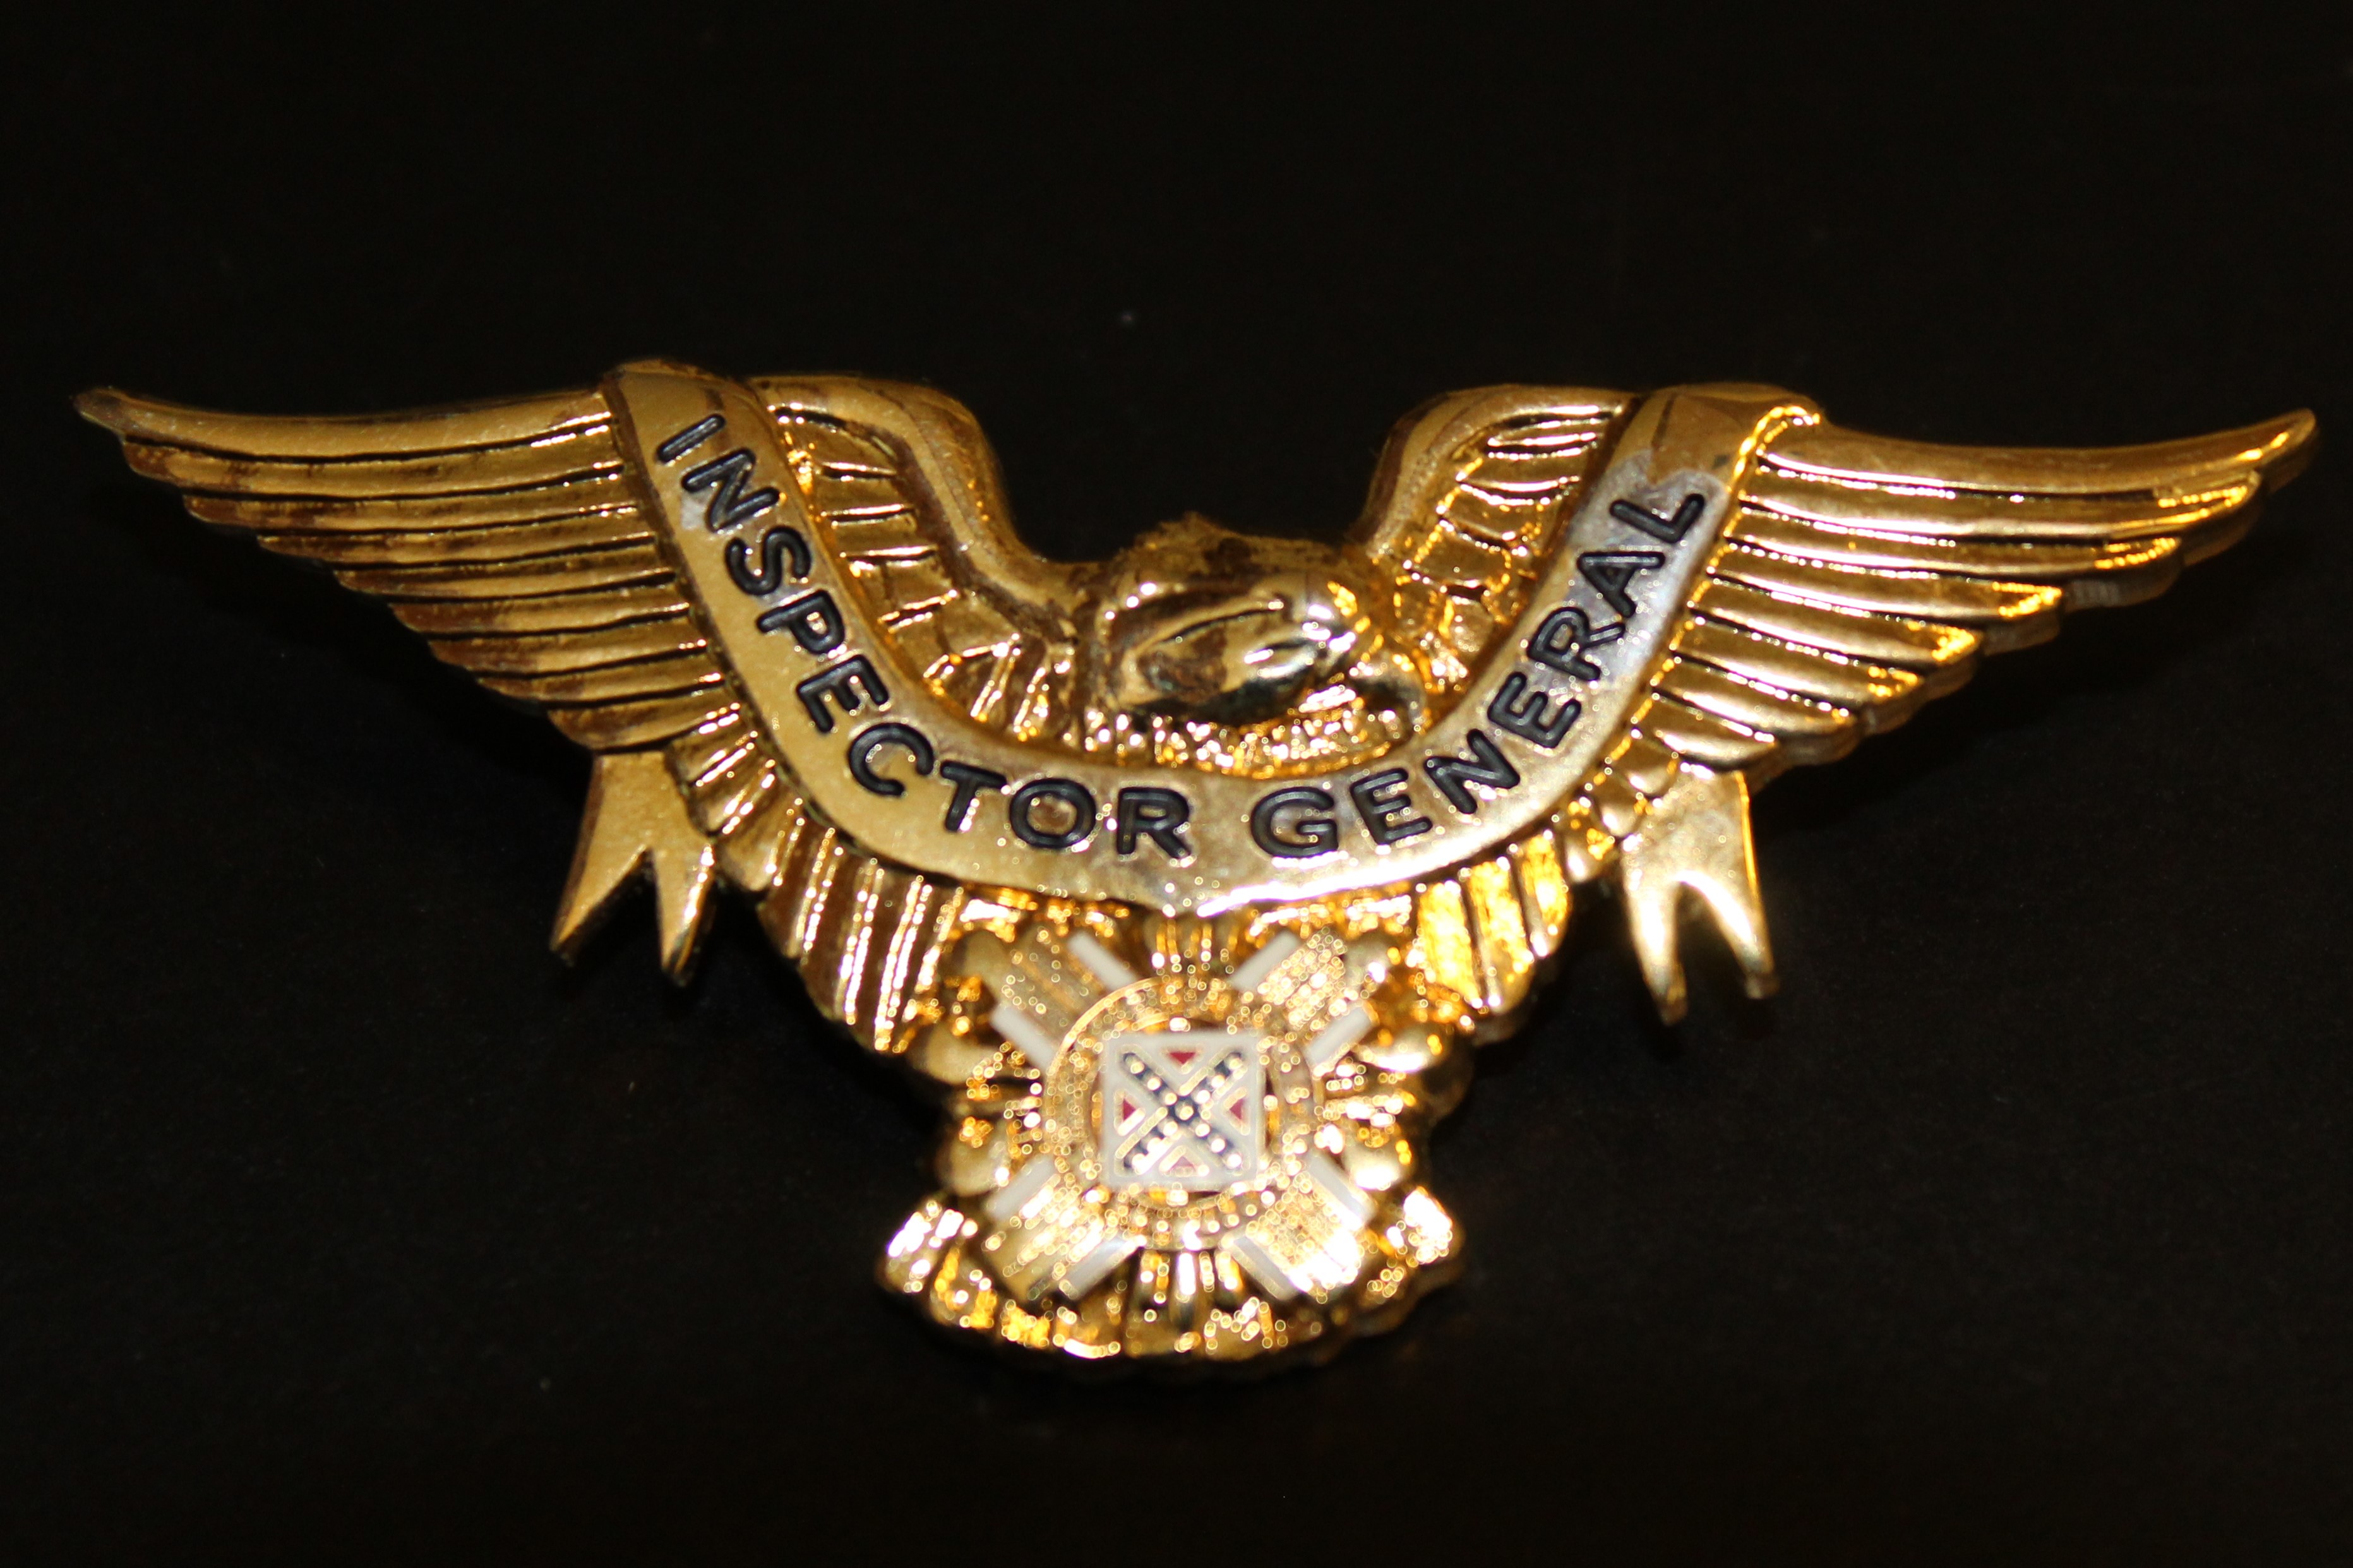 Eagle, Inspector General